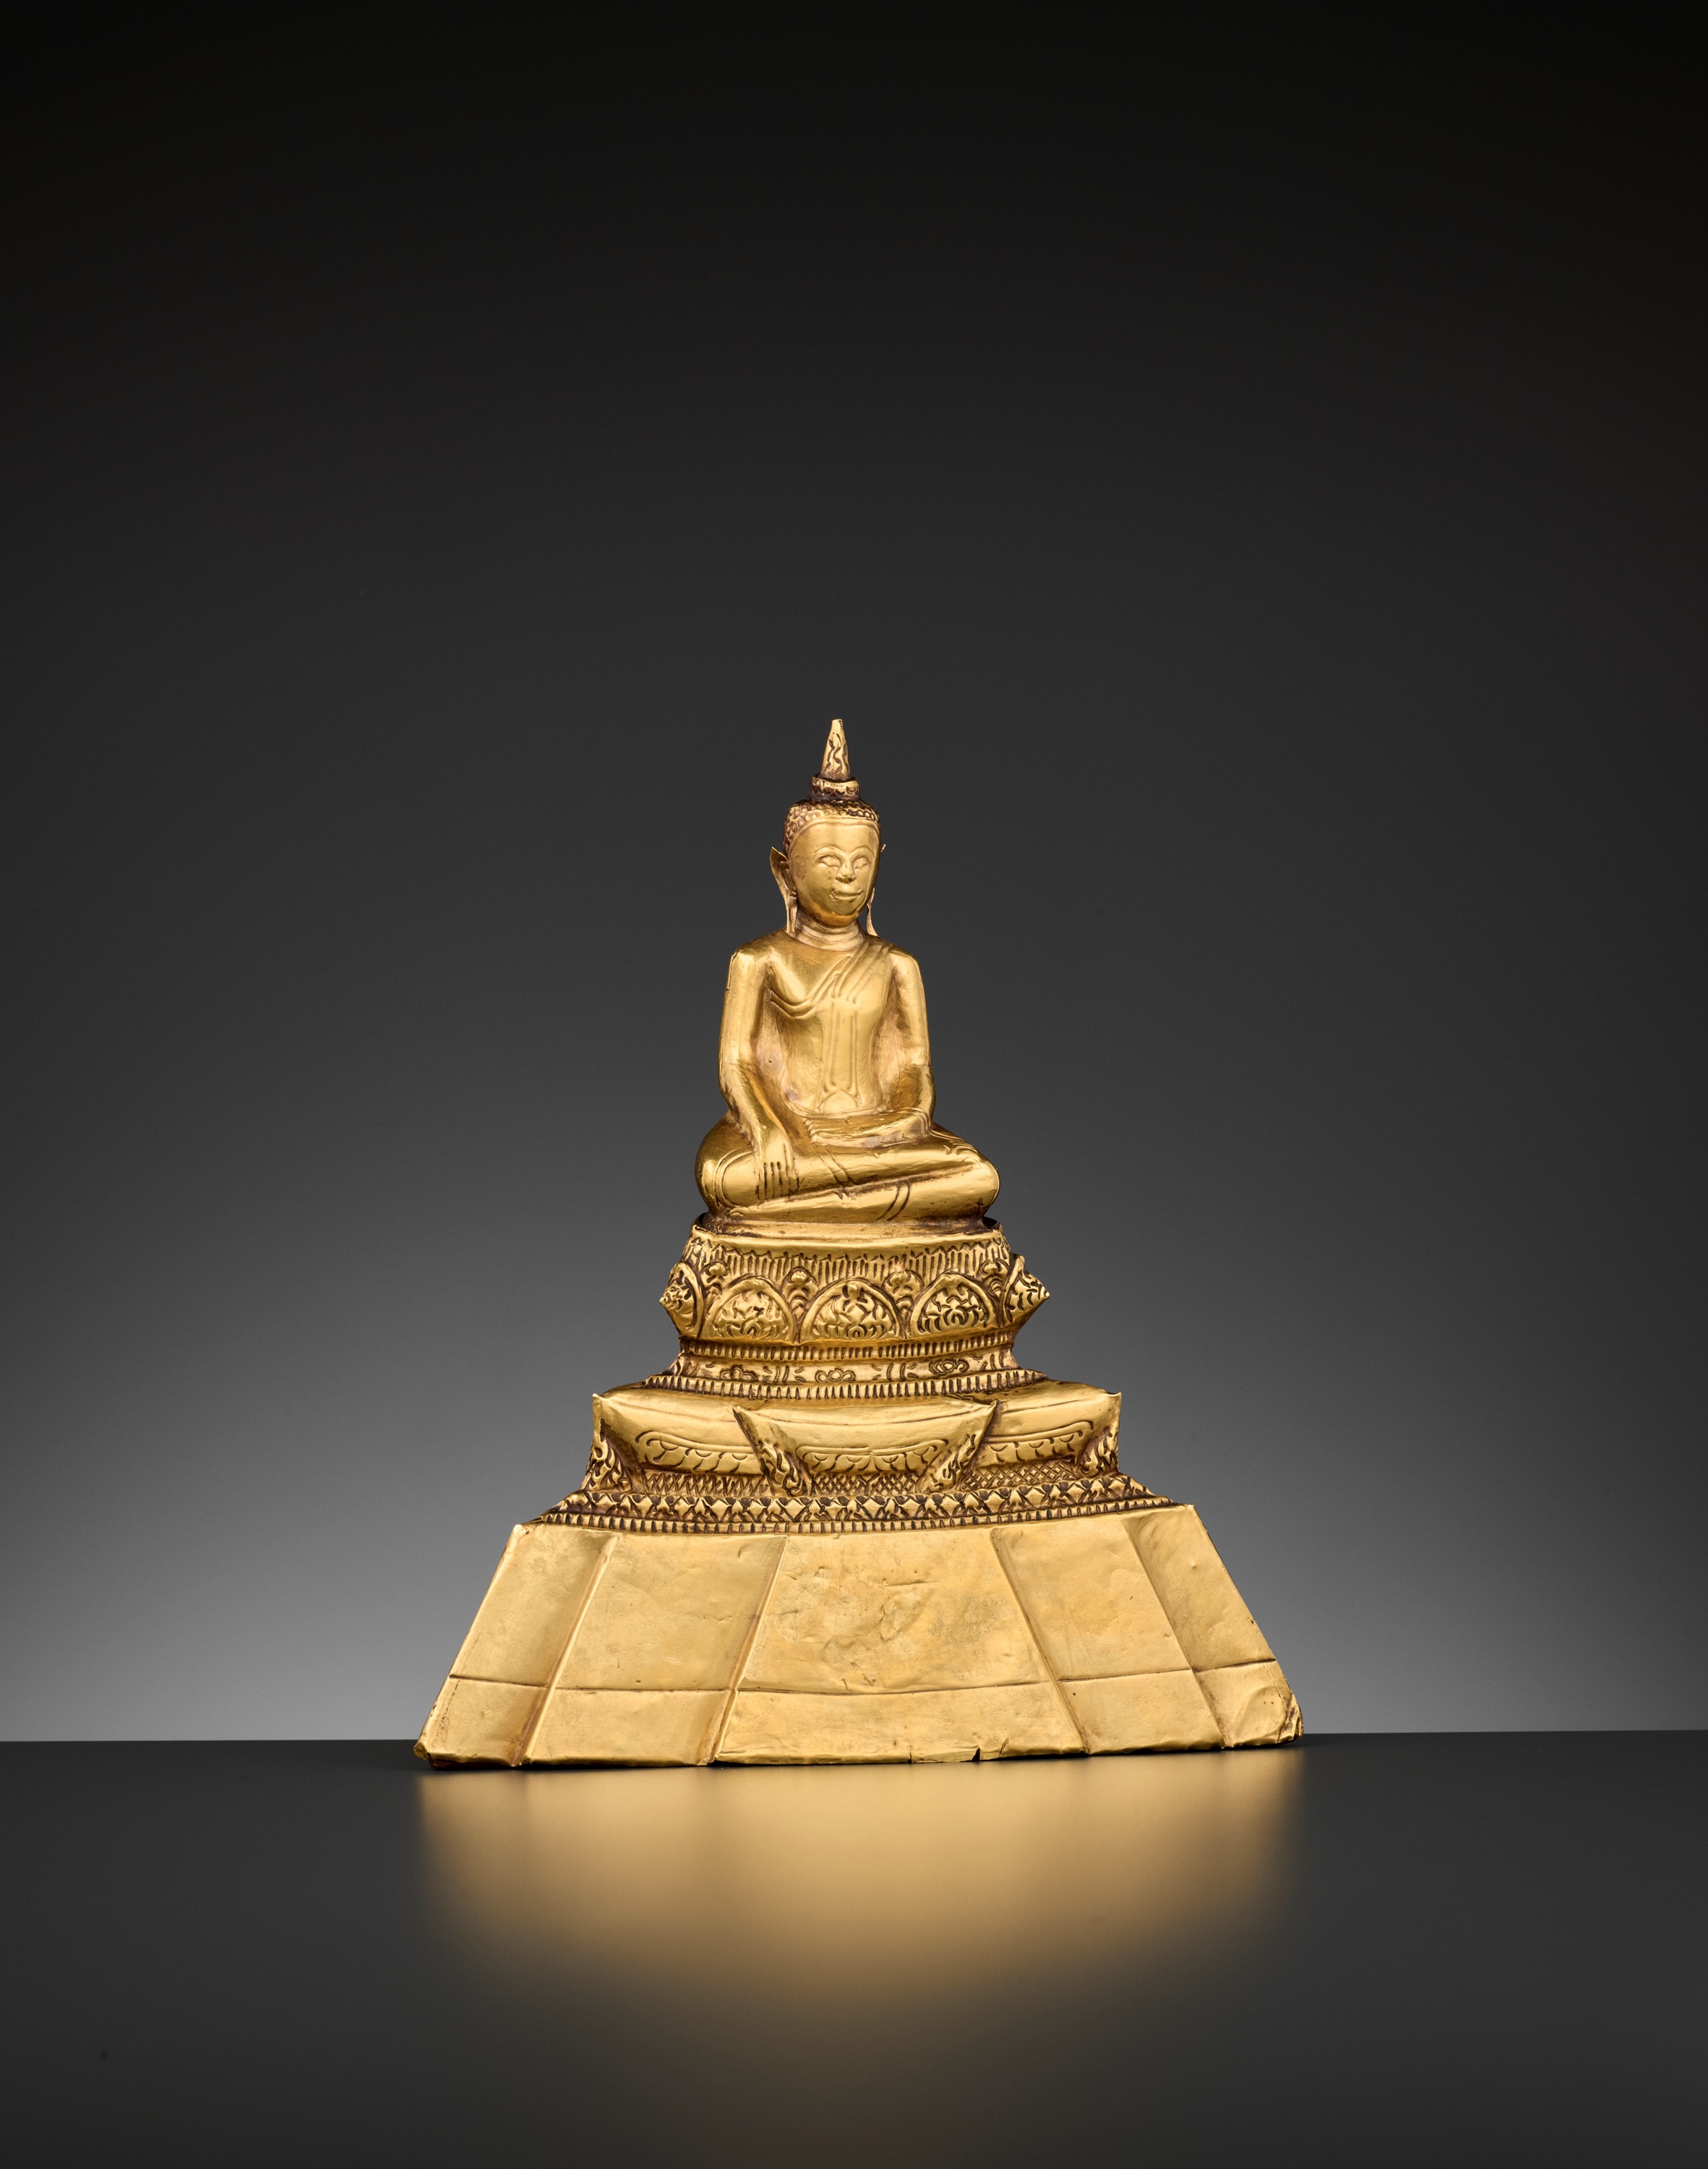 A 24-CARAT GOLD REPOUSSE FIGURE OF BUDDHA SHAKYAMUNI, AYUTTHAYA STYLE